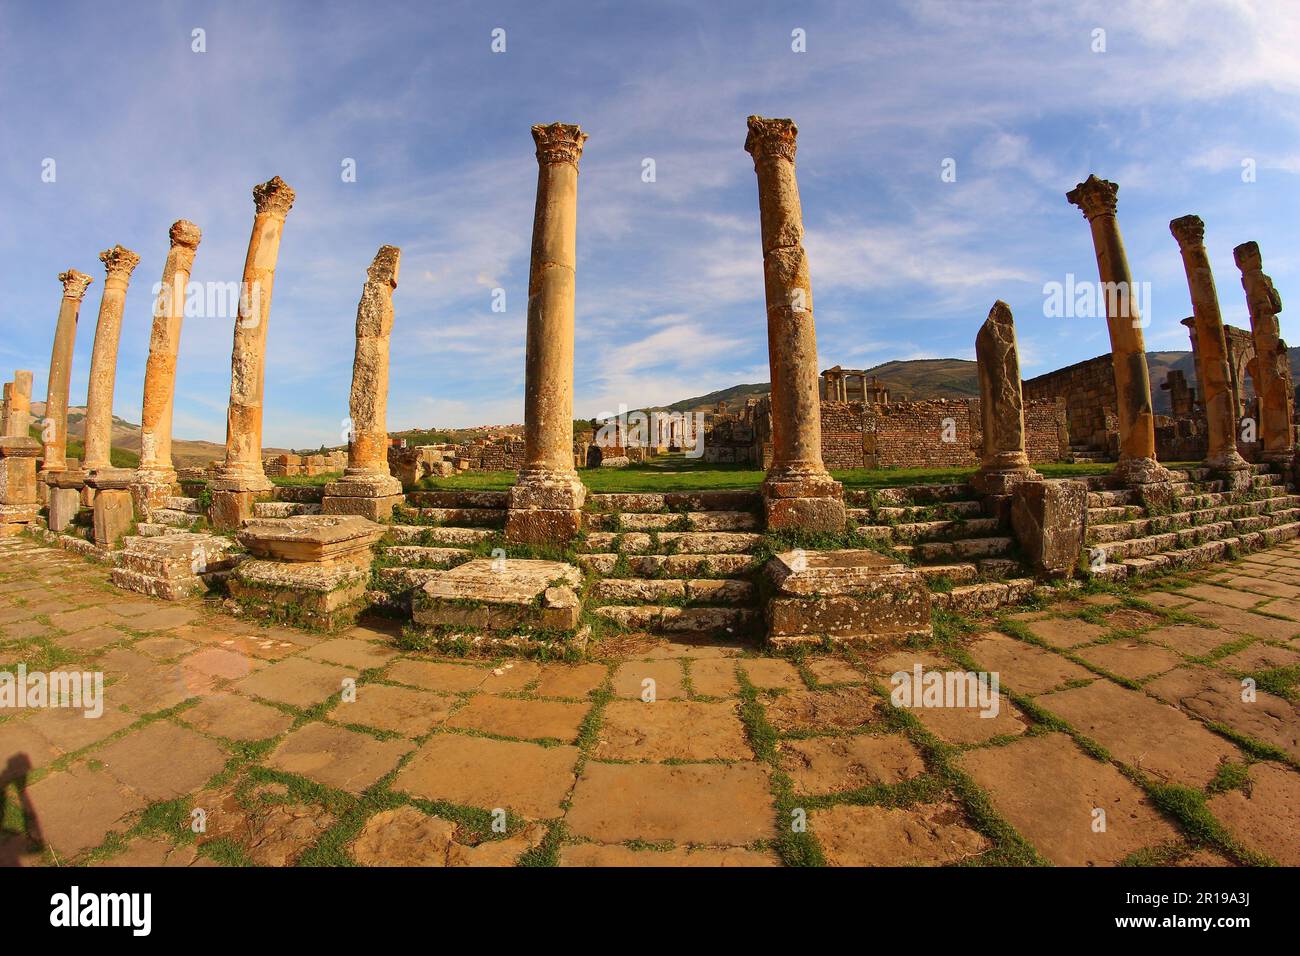 Ruines romaines de Djemila, Algérie. Colonnes. Banque D'Images